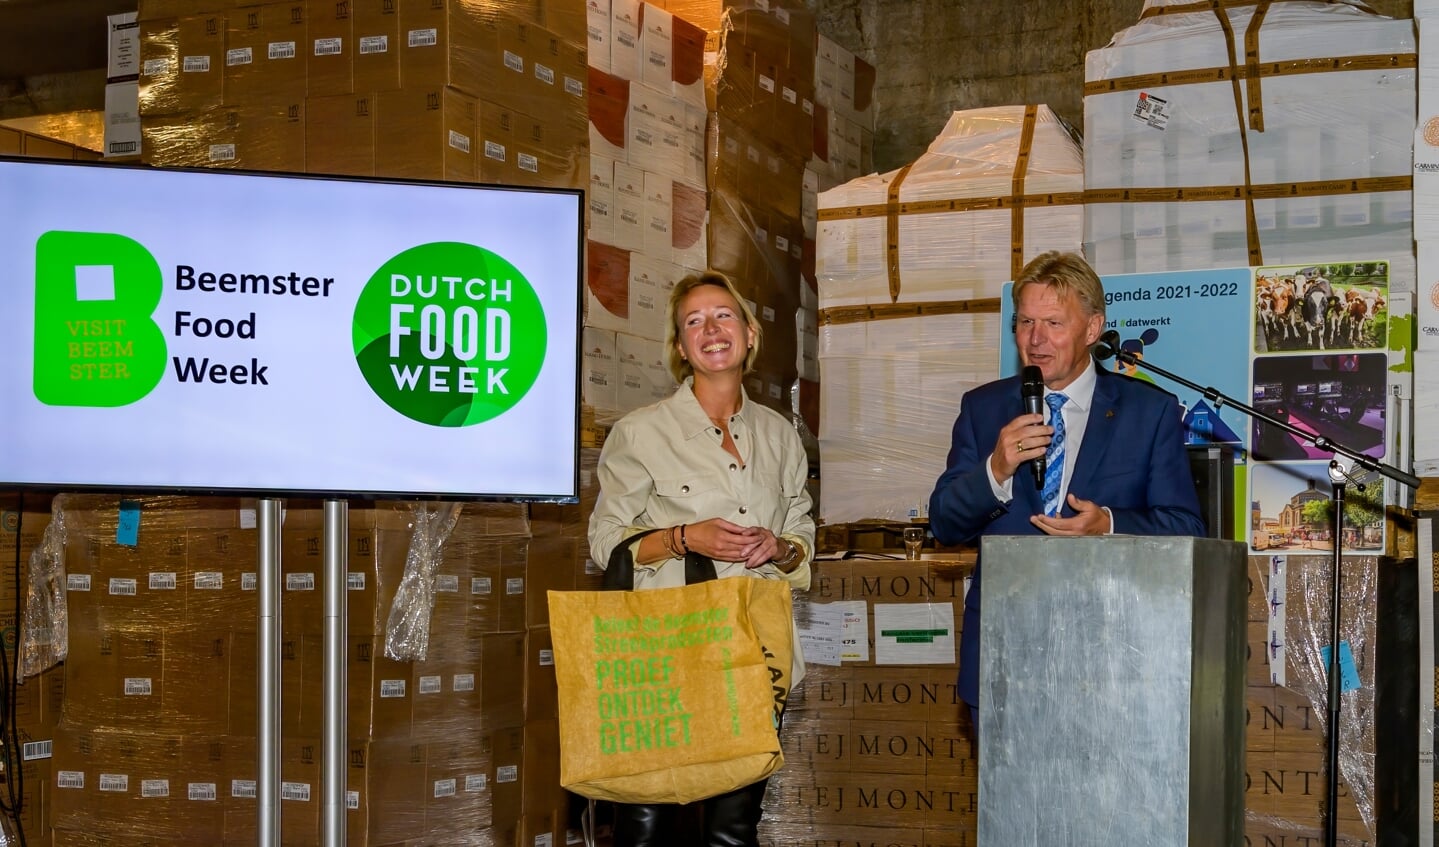 De opening van de Beemster Food Week werd verricht door Jaap Bond. Naast hem Daniëlle Woudstra van VISIT Beemster. 